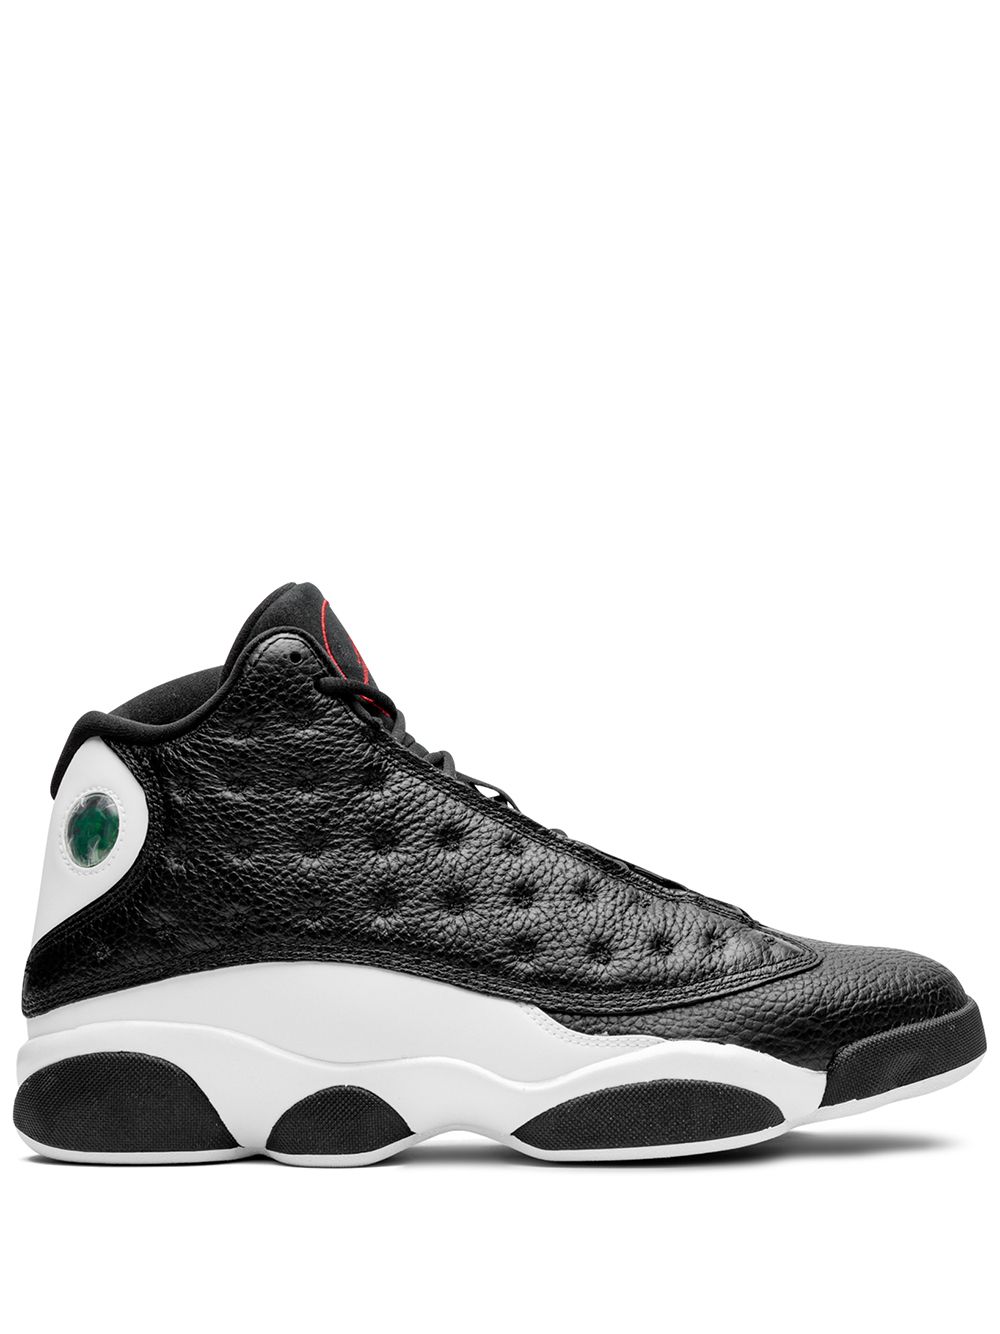 Jordan Air Jordan 13 Retro "Reverse He Got Game" sneakers - Black